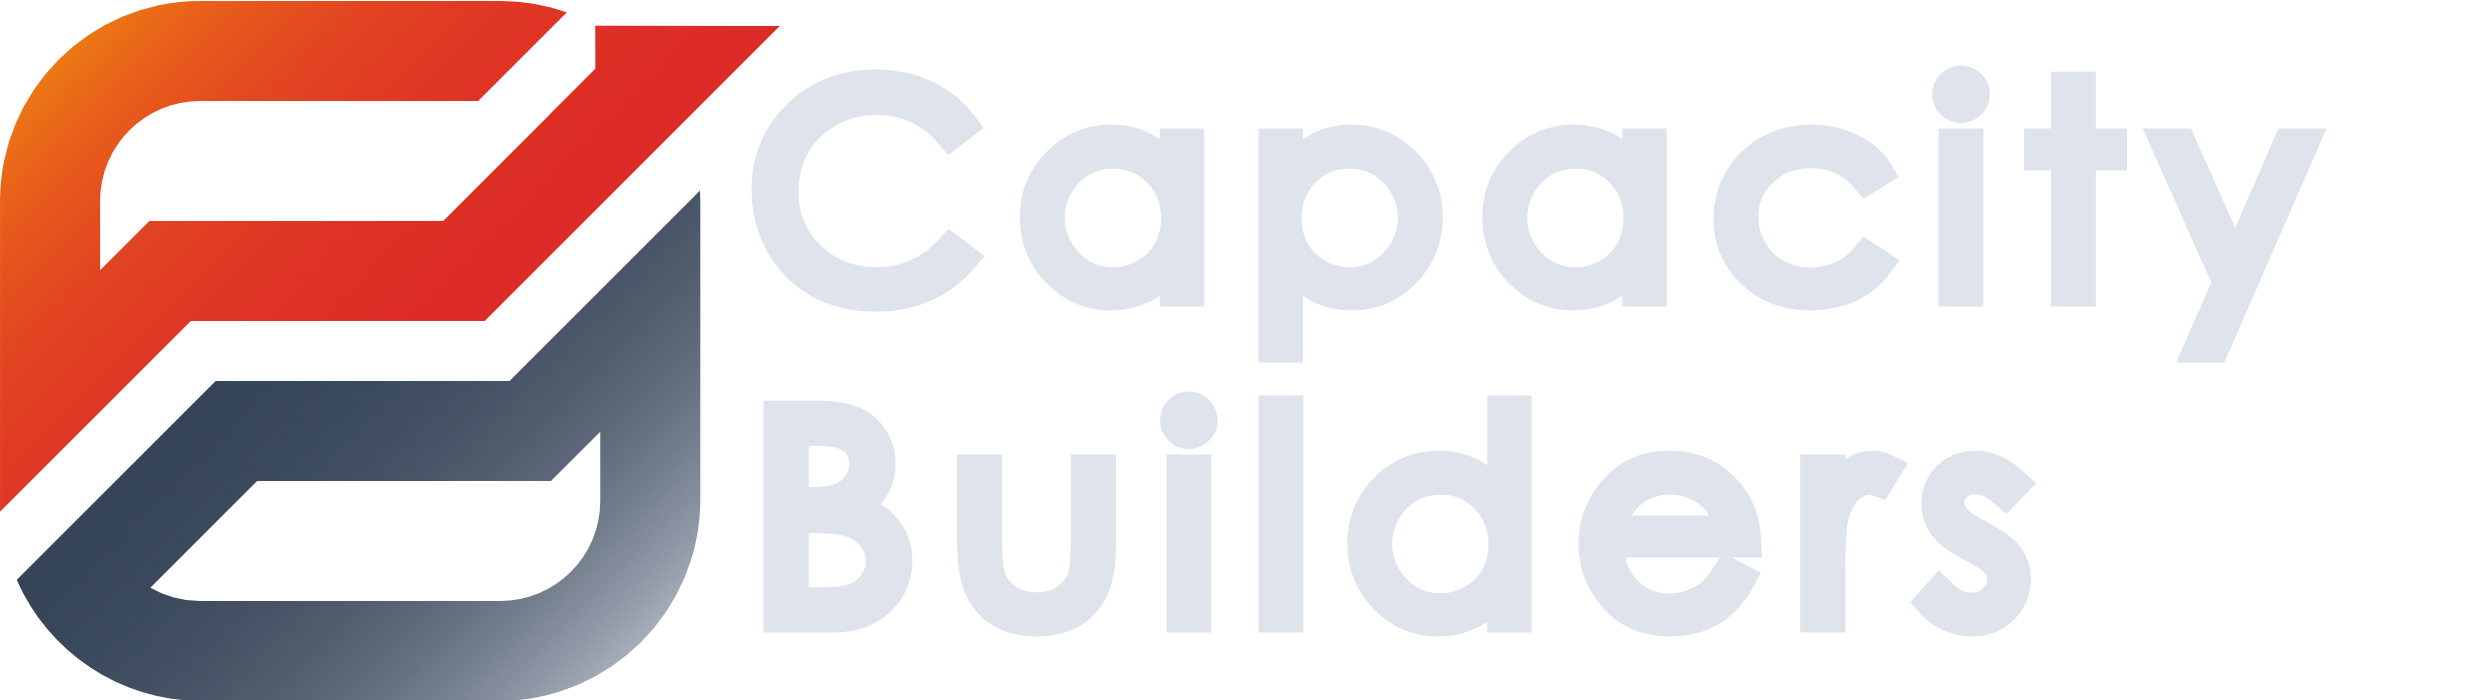 Capacity Builders Home